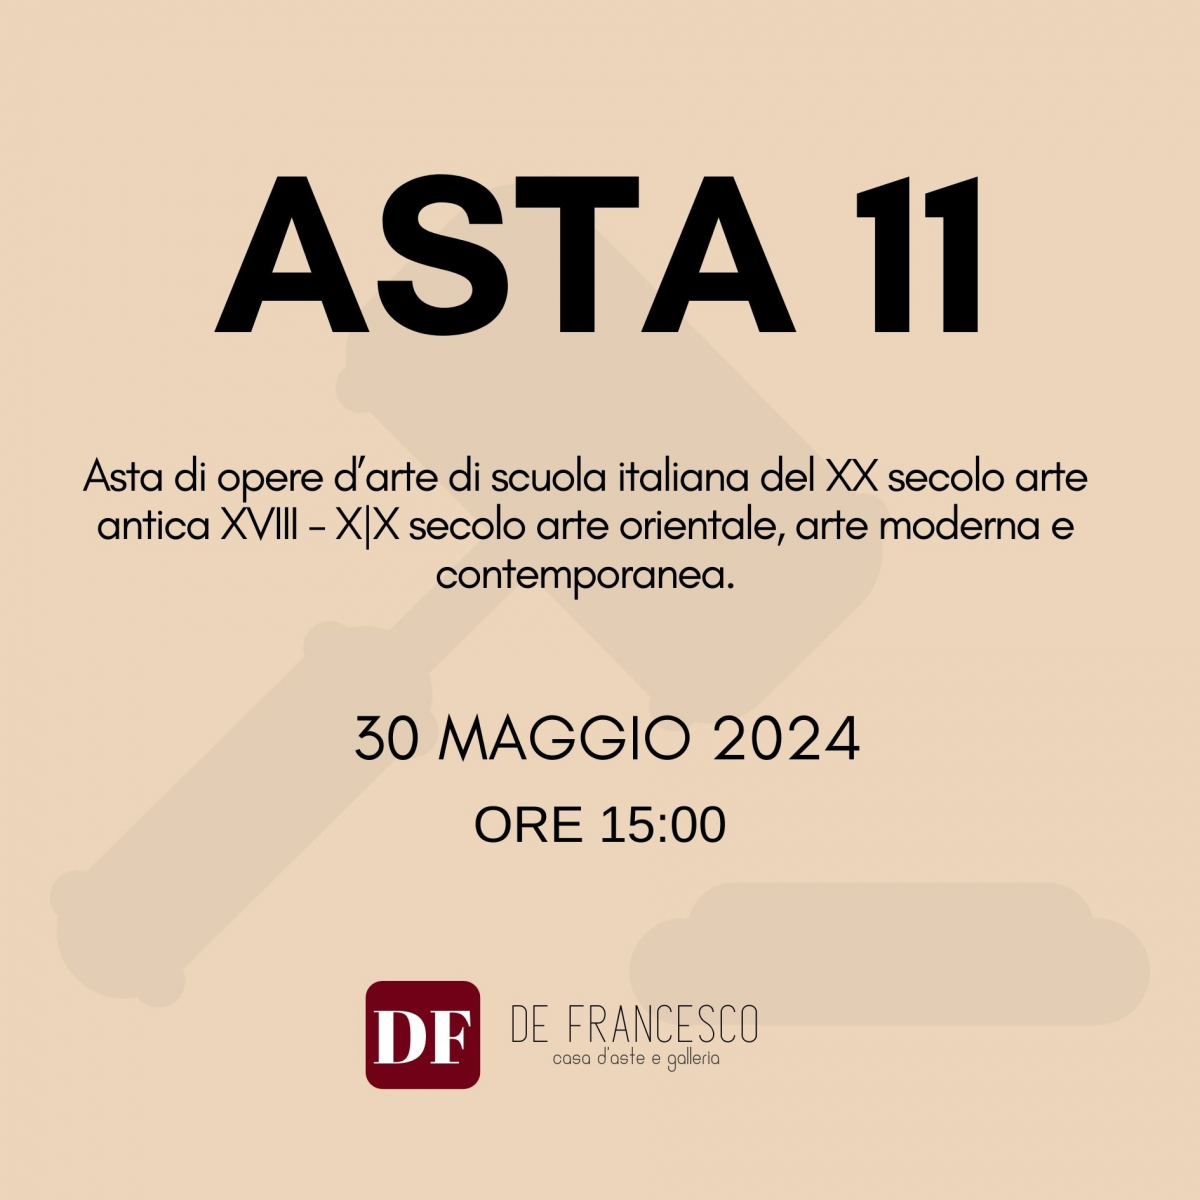 ASTA 11 - Asta di opere d’arte di scuola italiana del XX secolo arte antica XVIII - X|X secolo arte orientale, arte moderna e contemporanea.